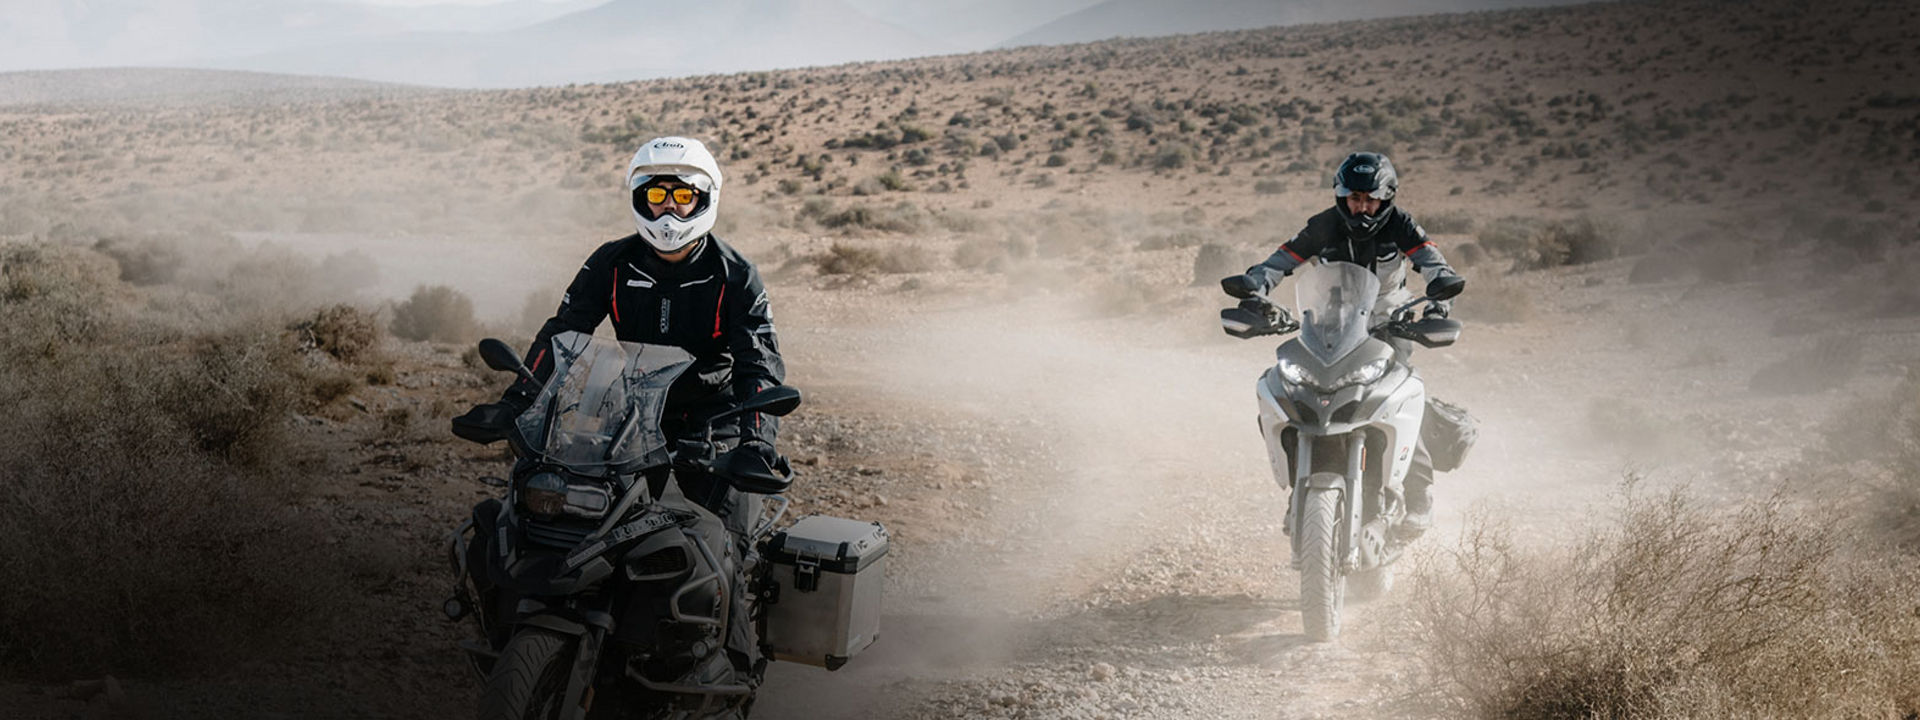 Esta imagen muestra a dos motociclistas que usan neumáticos de trail Bridgestone para explorar un desierto en motocicleta.